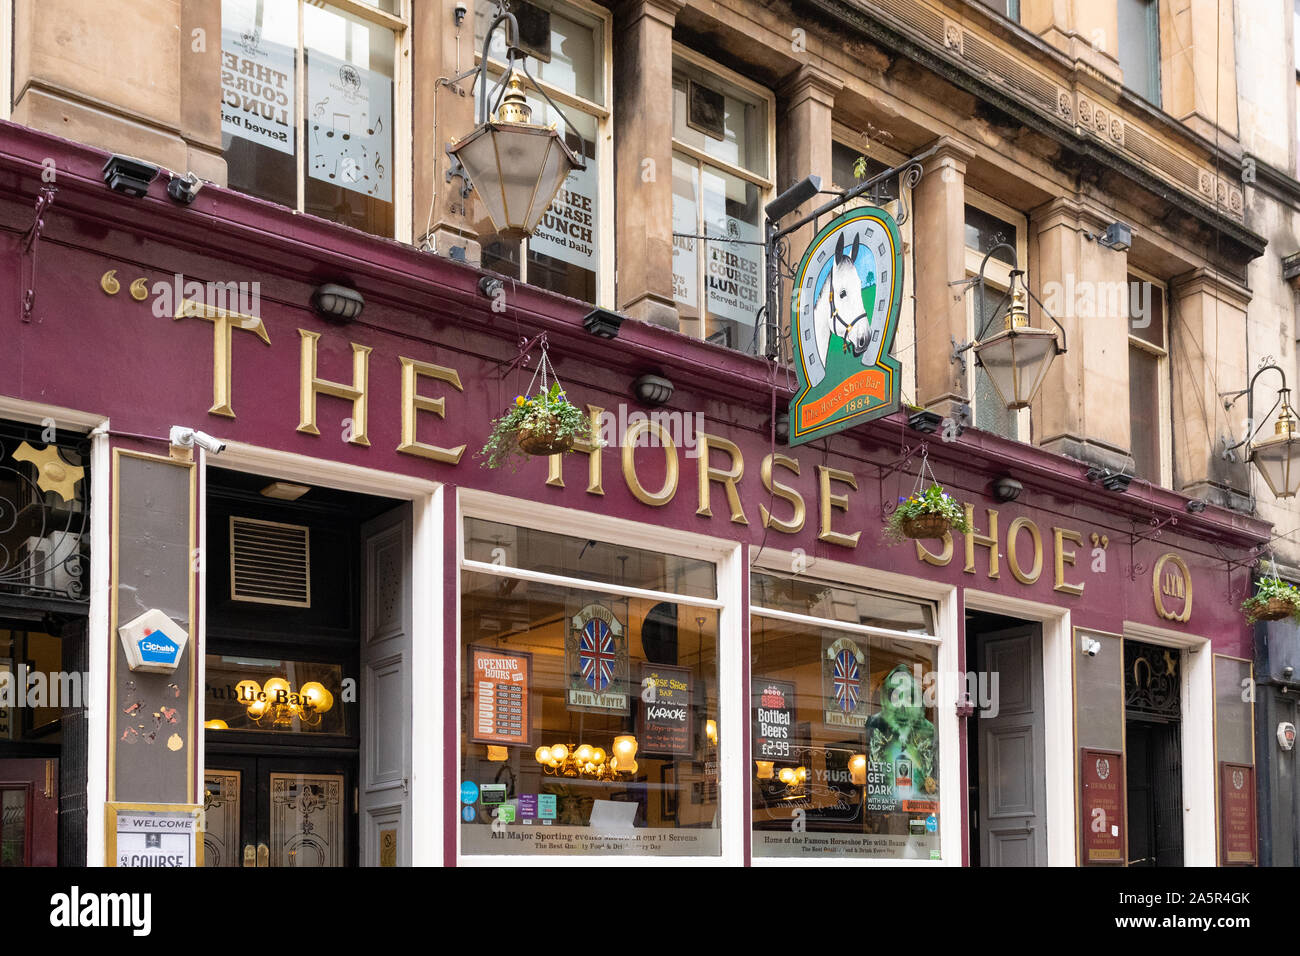 La barre de fer à cheval - un traditionnel pub de Glasgow, l'établissement Drury Street, Glasgow, Scotland, UK Banque D'Images